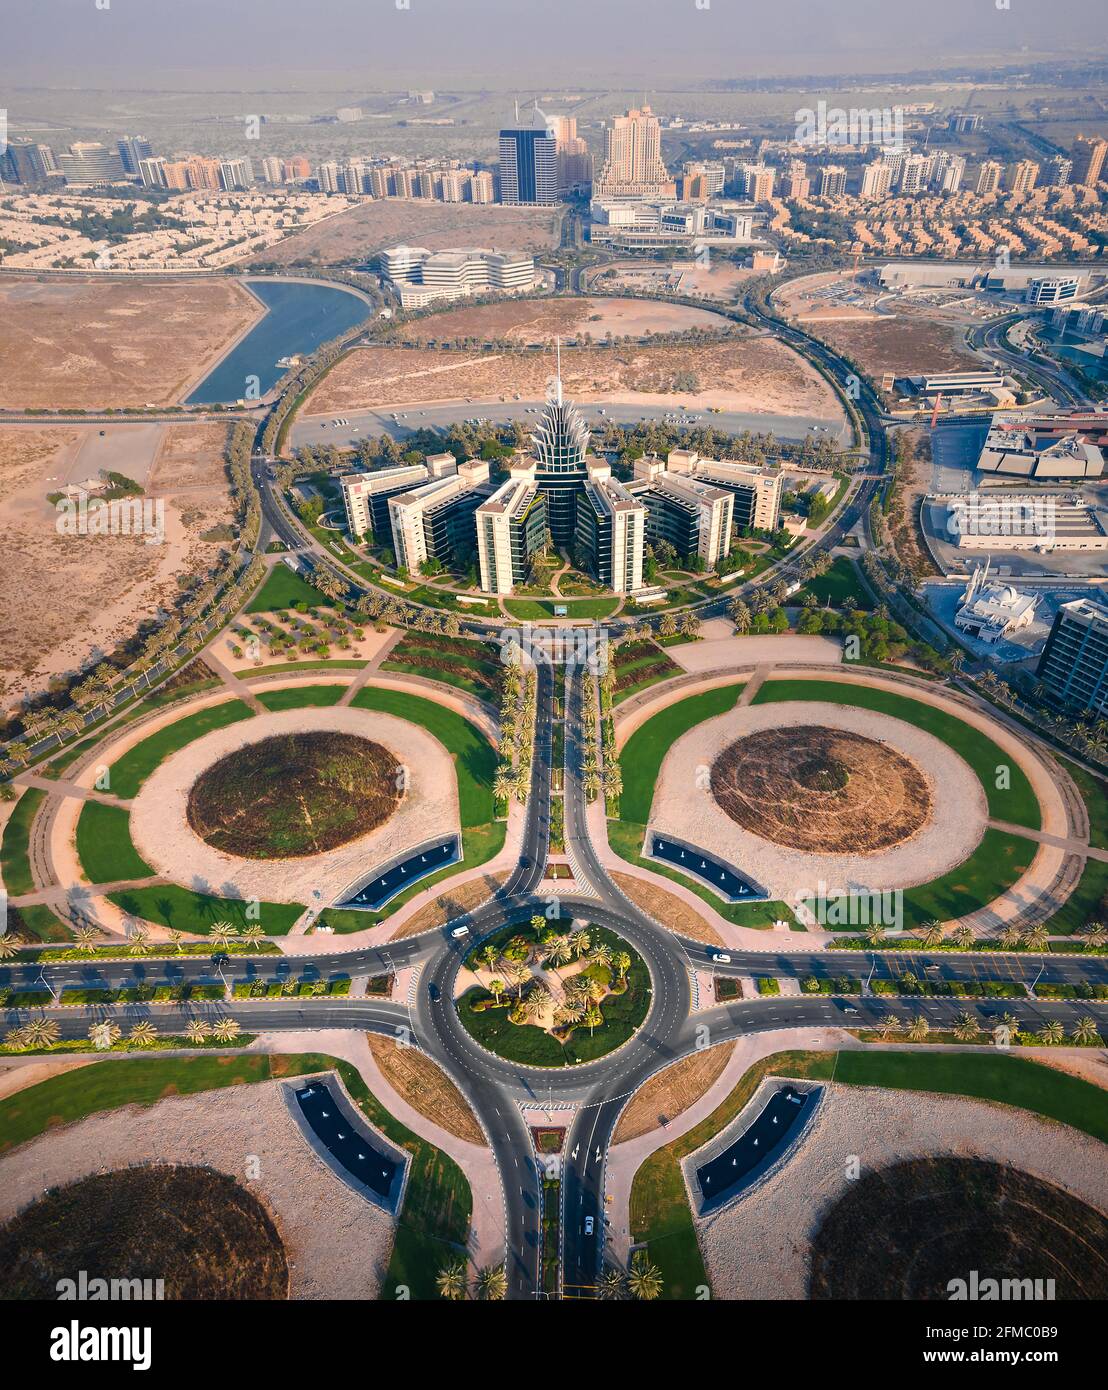 Dubai, Vereinigte Arabische Emirate - 5. Mai 2021: Technologiepark der Dubai Silicon Oasis, Wohngebiet und Freizone in Dubai Emirate Vororte in Vereinigte Arabische Emirate Stockfoto